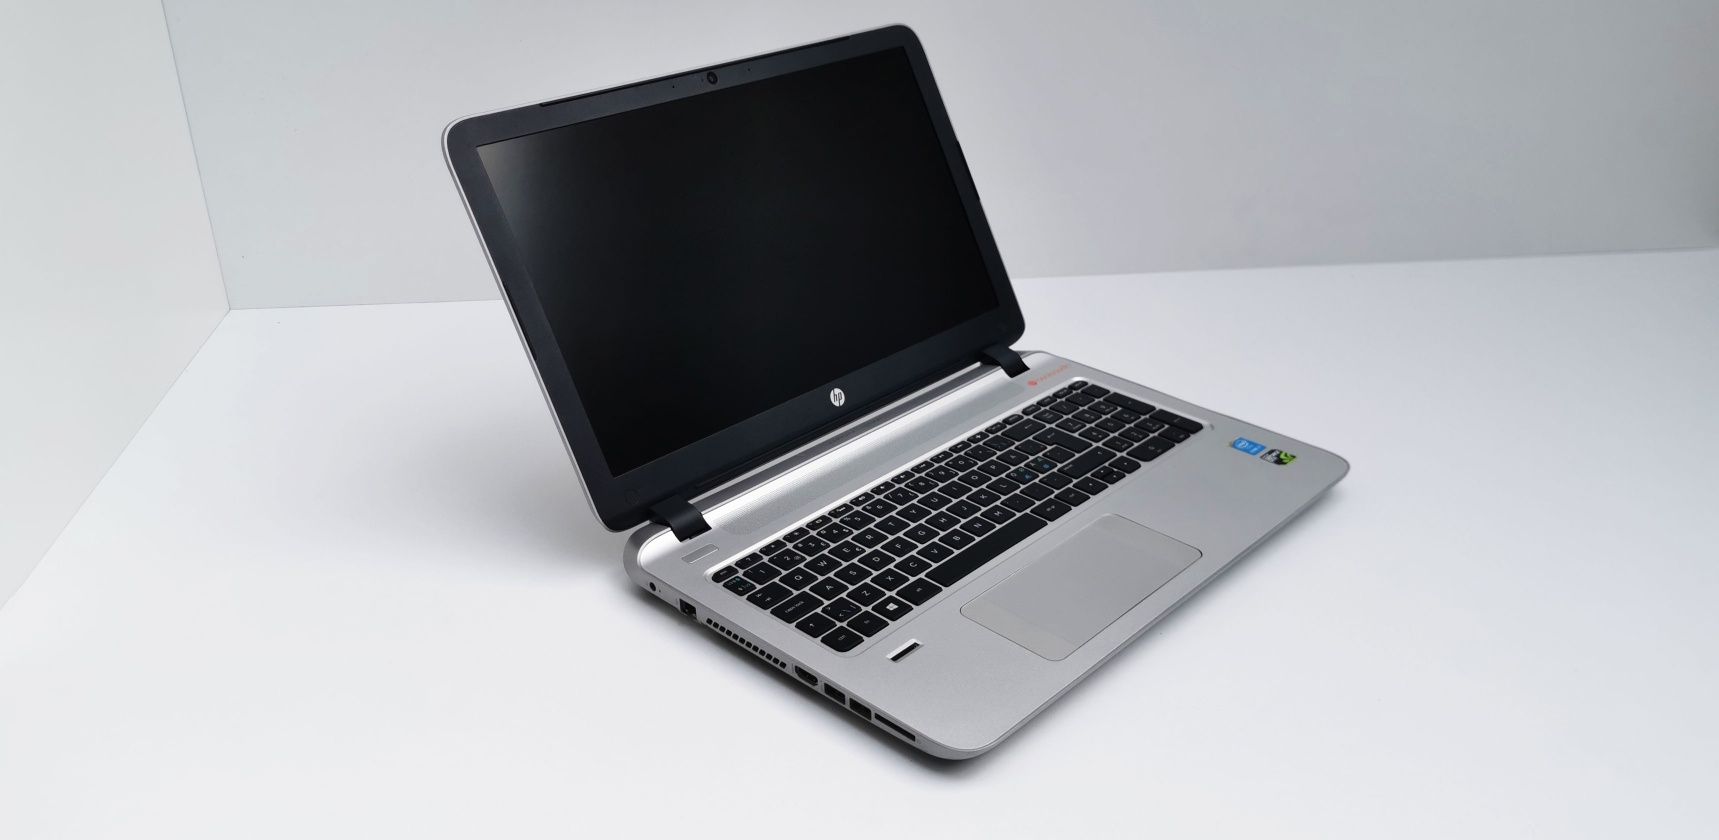 HP Envy Notebook FHD i7 5500U 16 GB RAM GTX 850M 4 GB 256 GB SSD